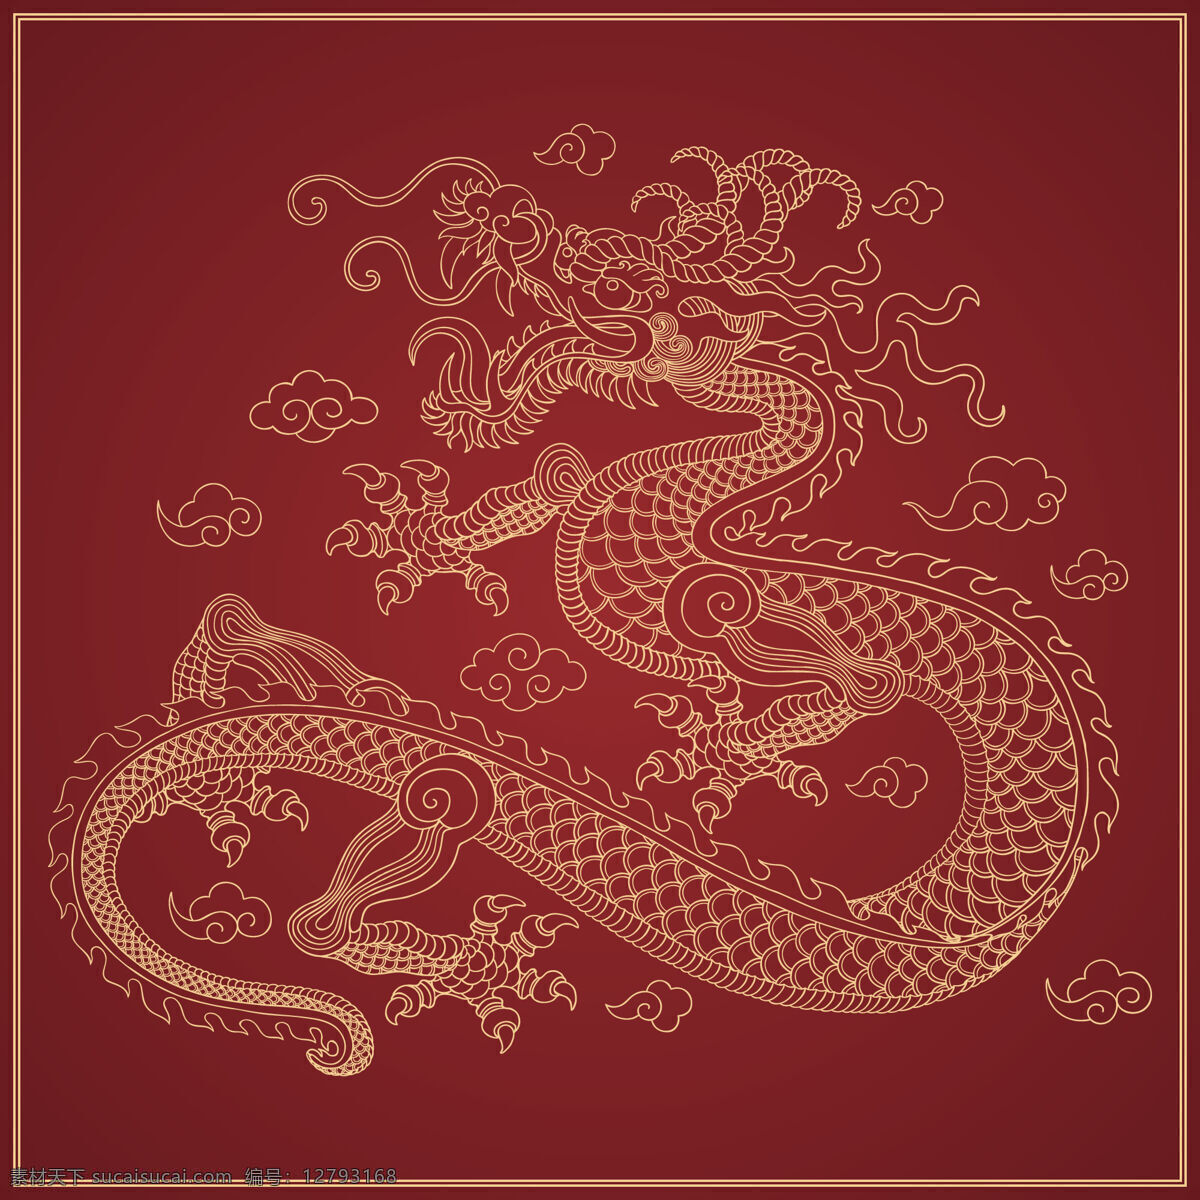 中国龙 龙 神龙 西方龙 手绘神龙 龙图腾 飞龙